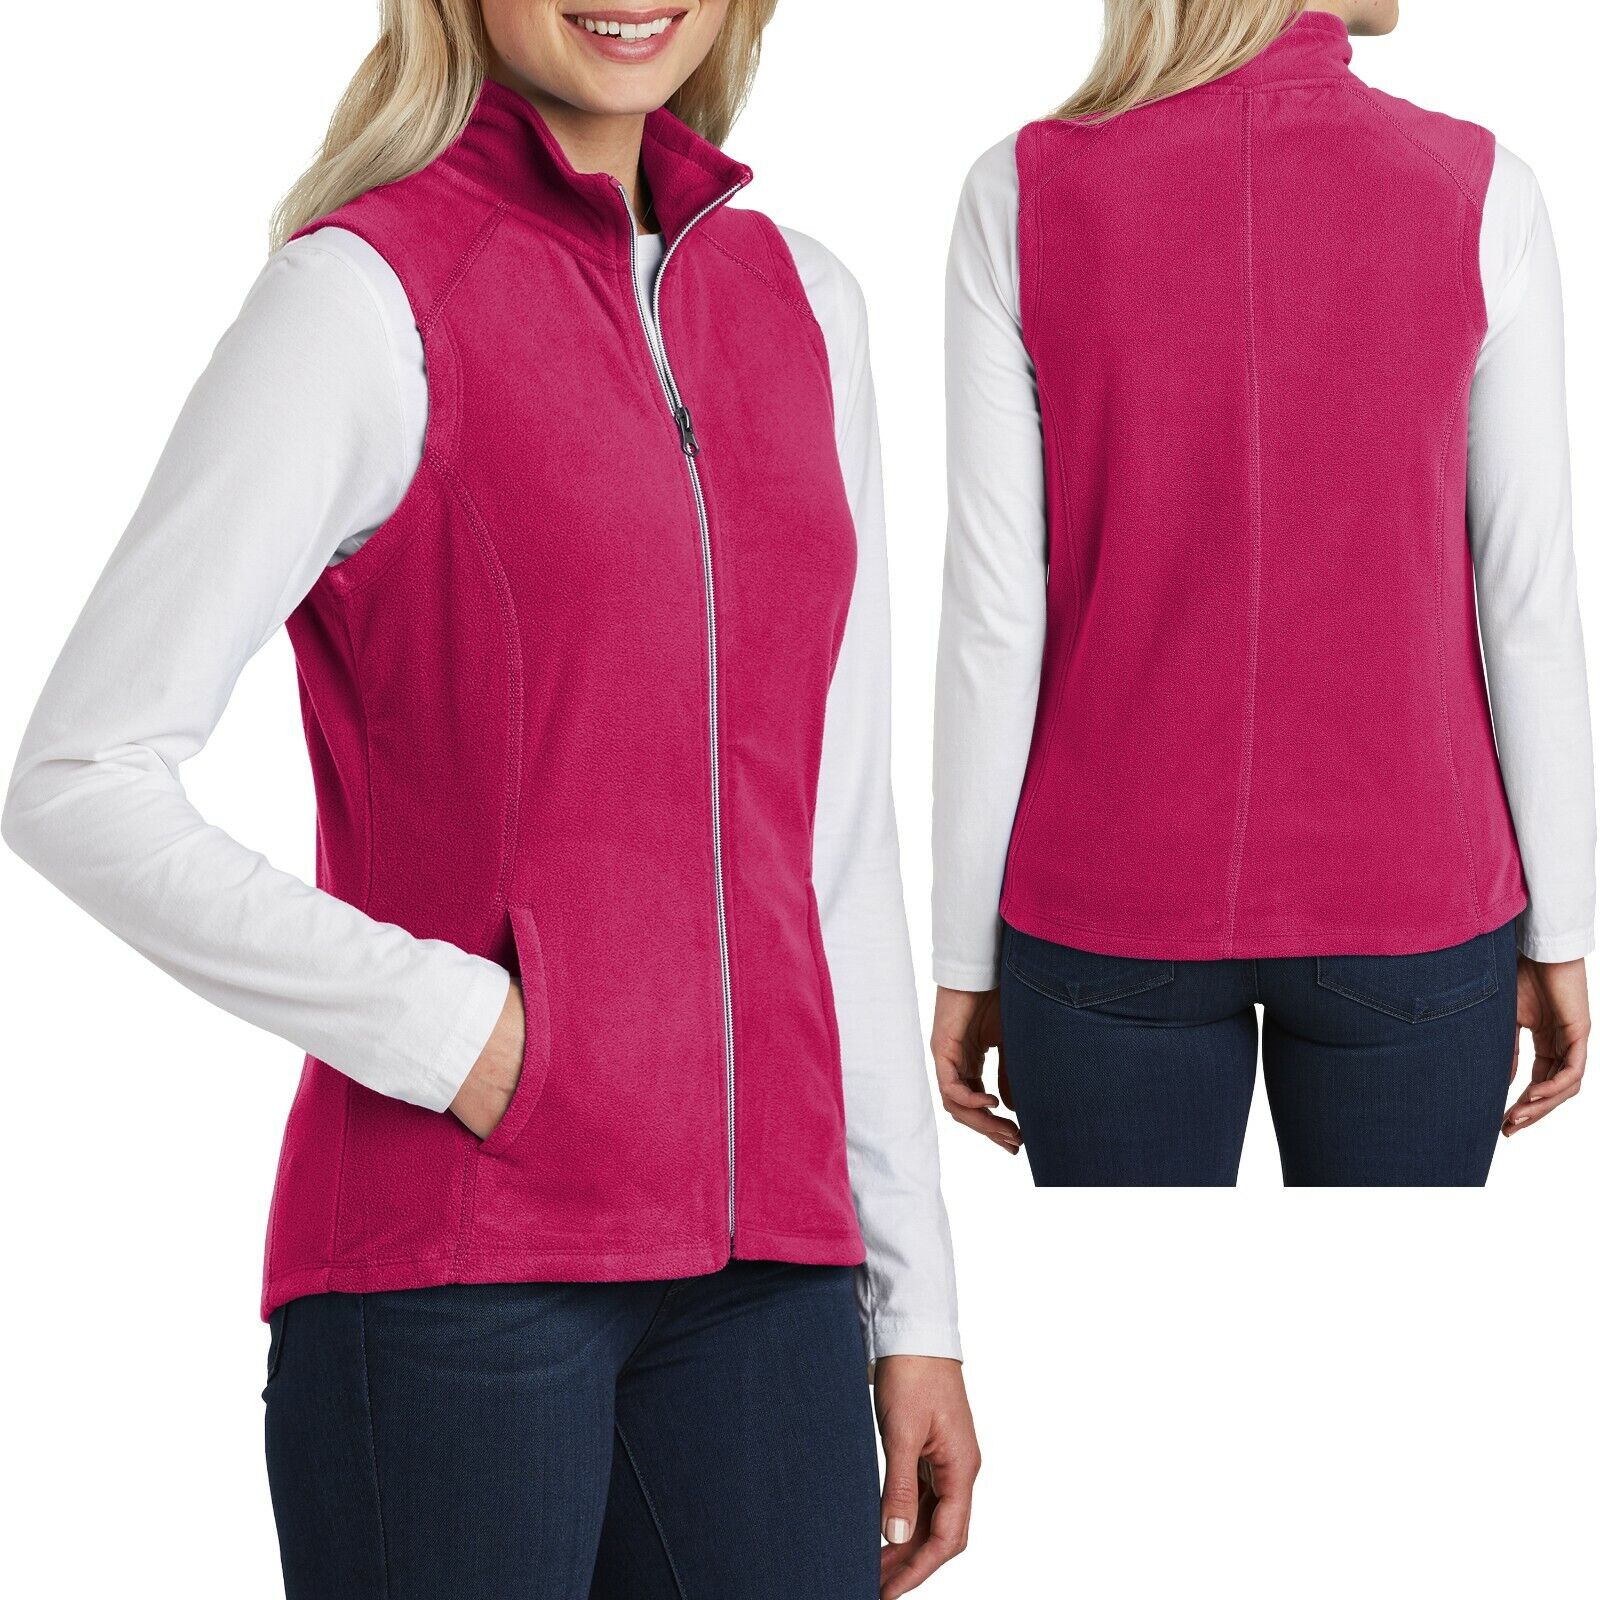 Ladies Plus Size Polar Fleece Vest With Pockets Warm Womens XL